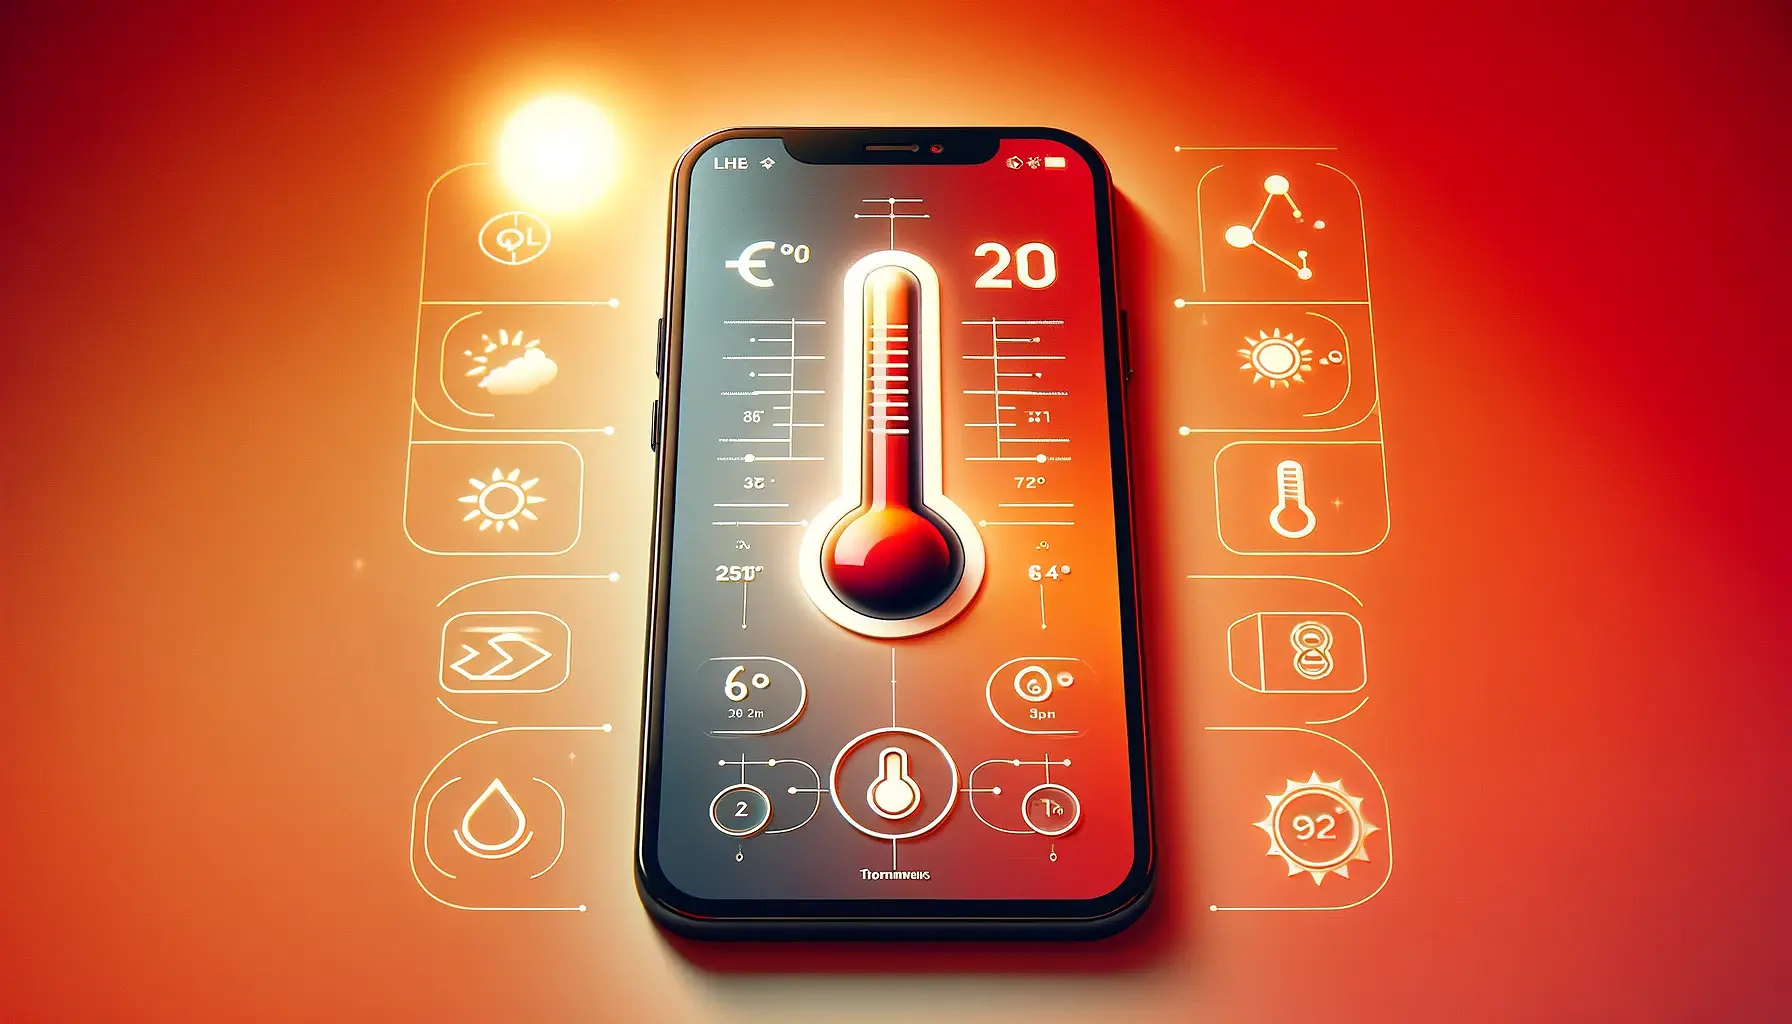 Météo connectée appli Android/IOS - Pack Emetteur Thermomètre ambiant + Hub  récepteur